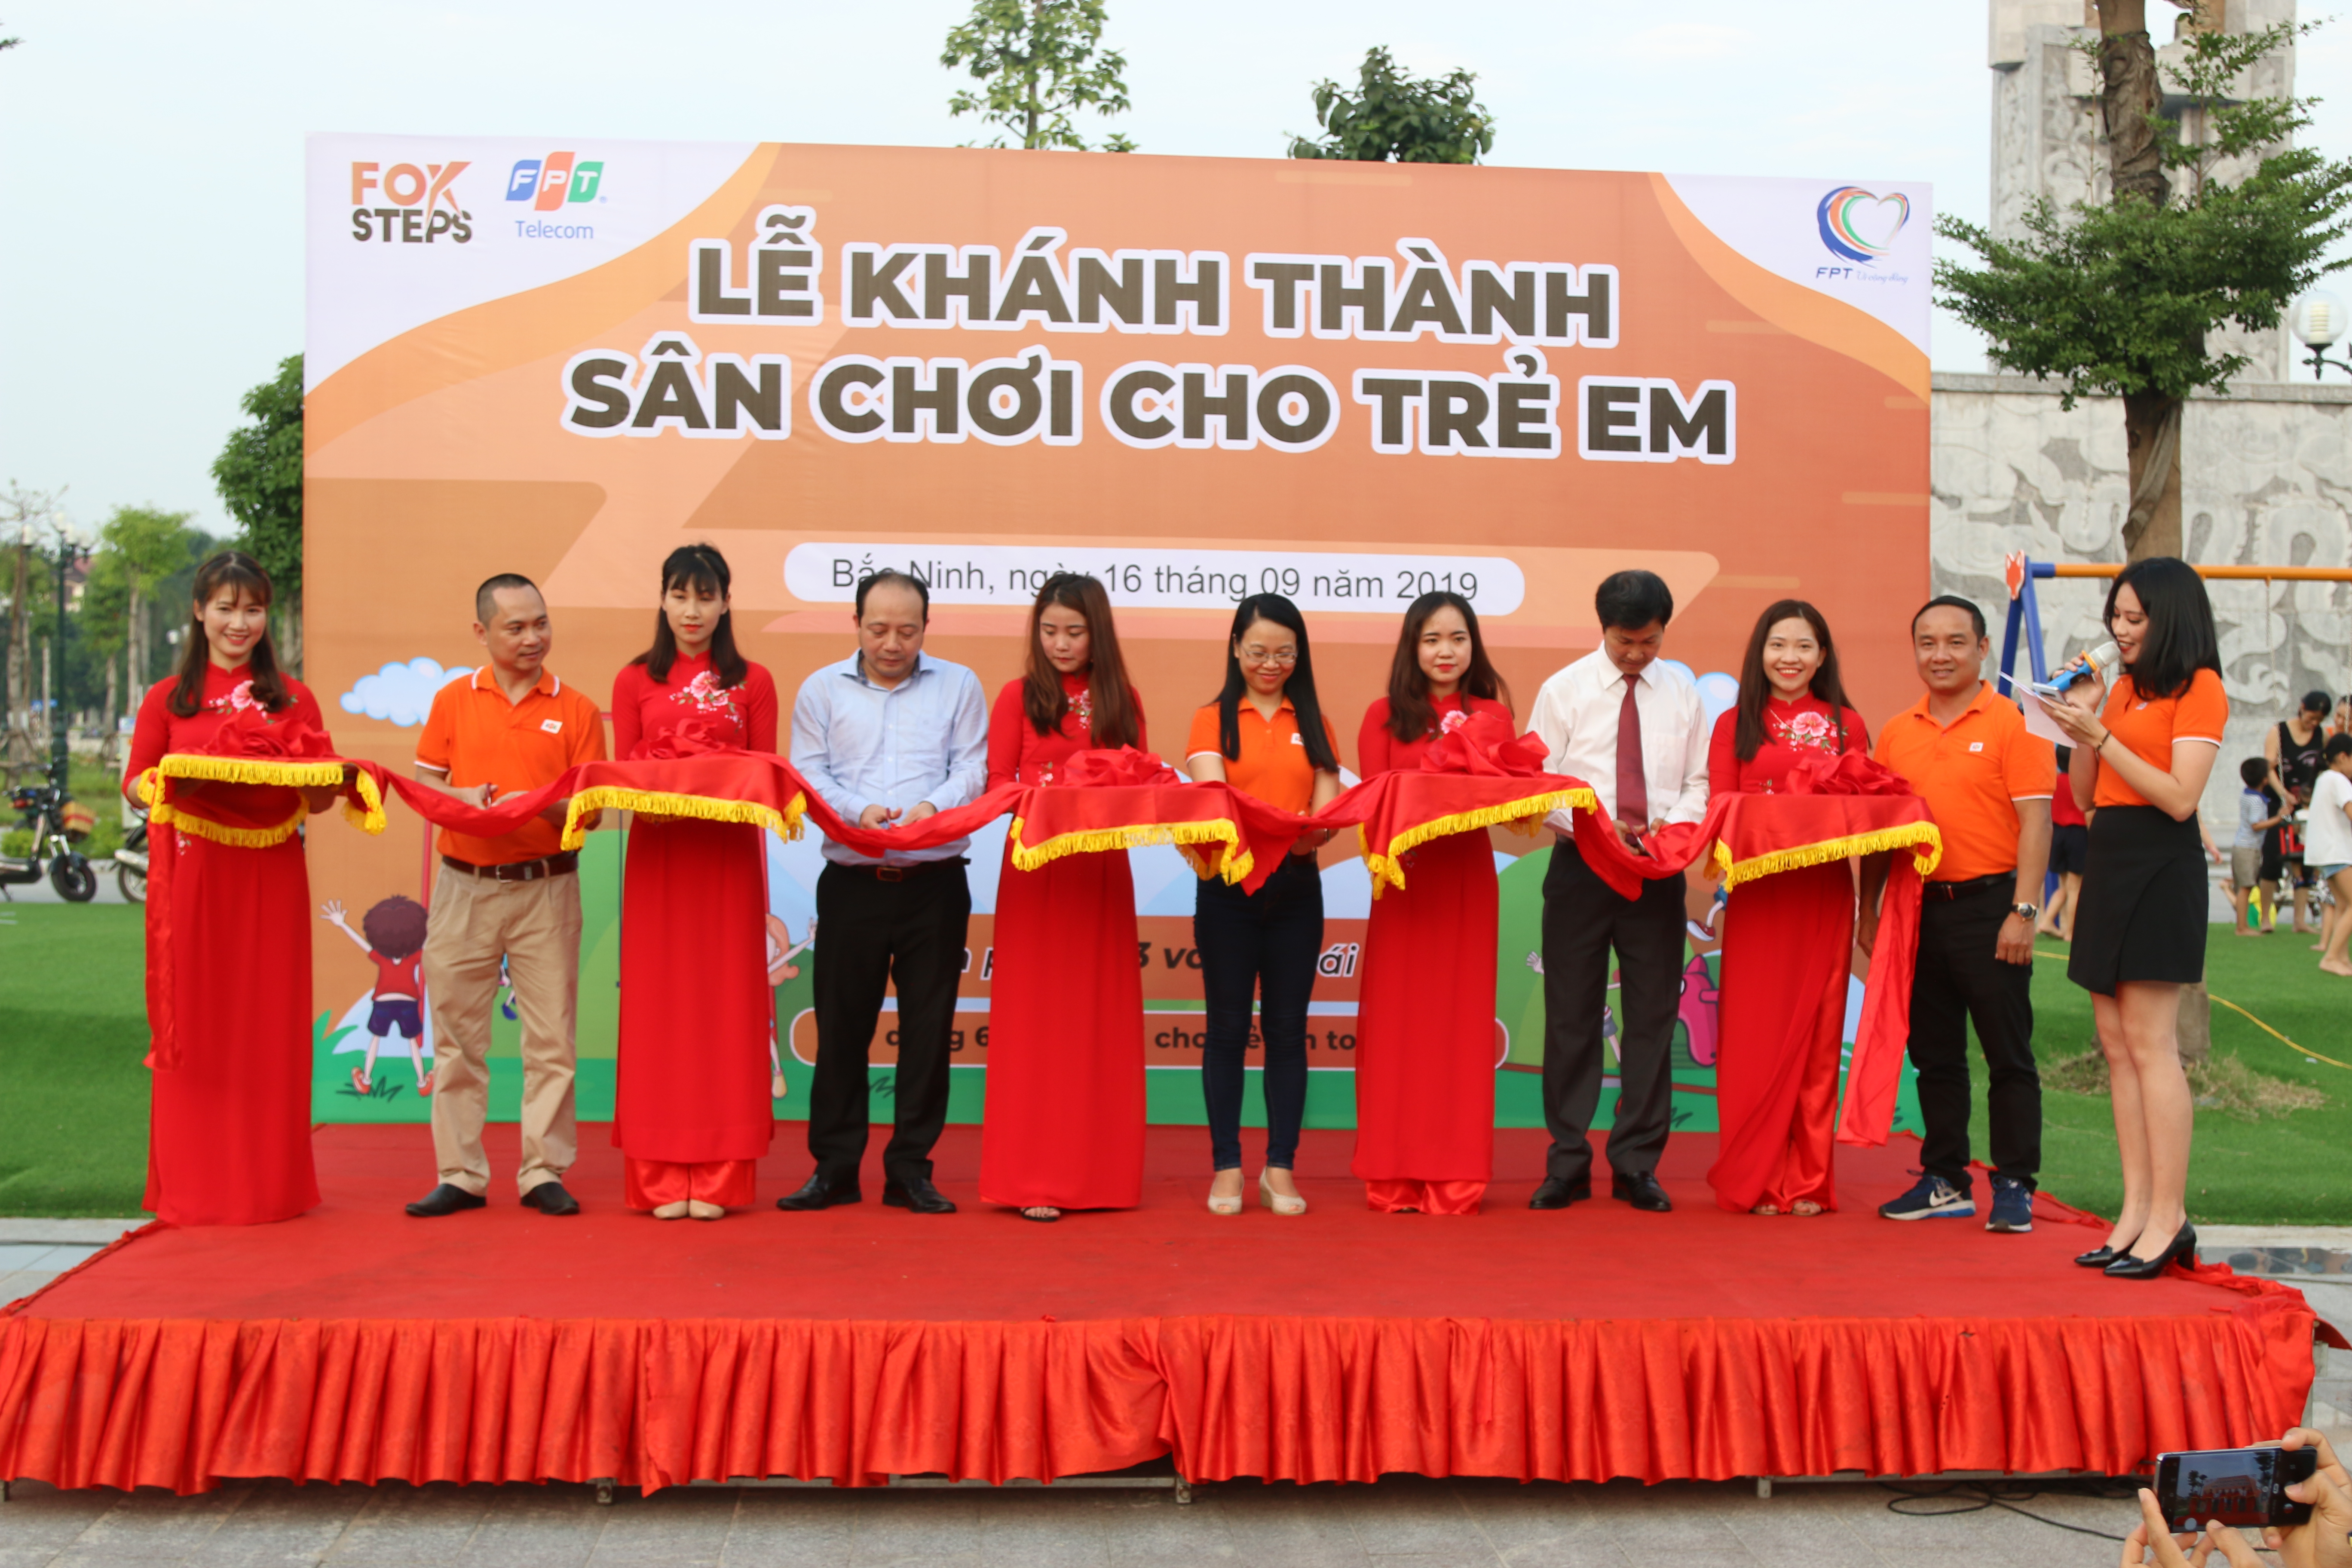  Các lãnh đạo tỉnh Bắc Ninh cùng lãnh đạo nhà Viễn thông cắt băng khánh thành sân chơi cho trẻ em. 